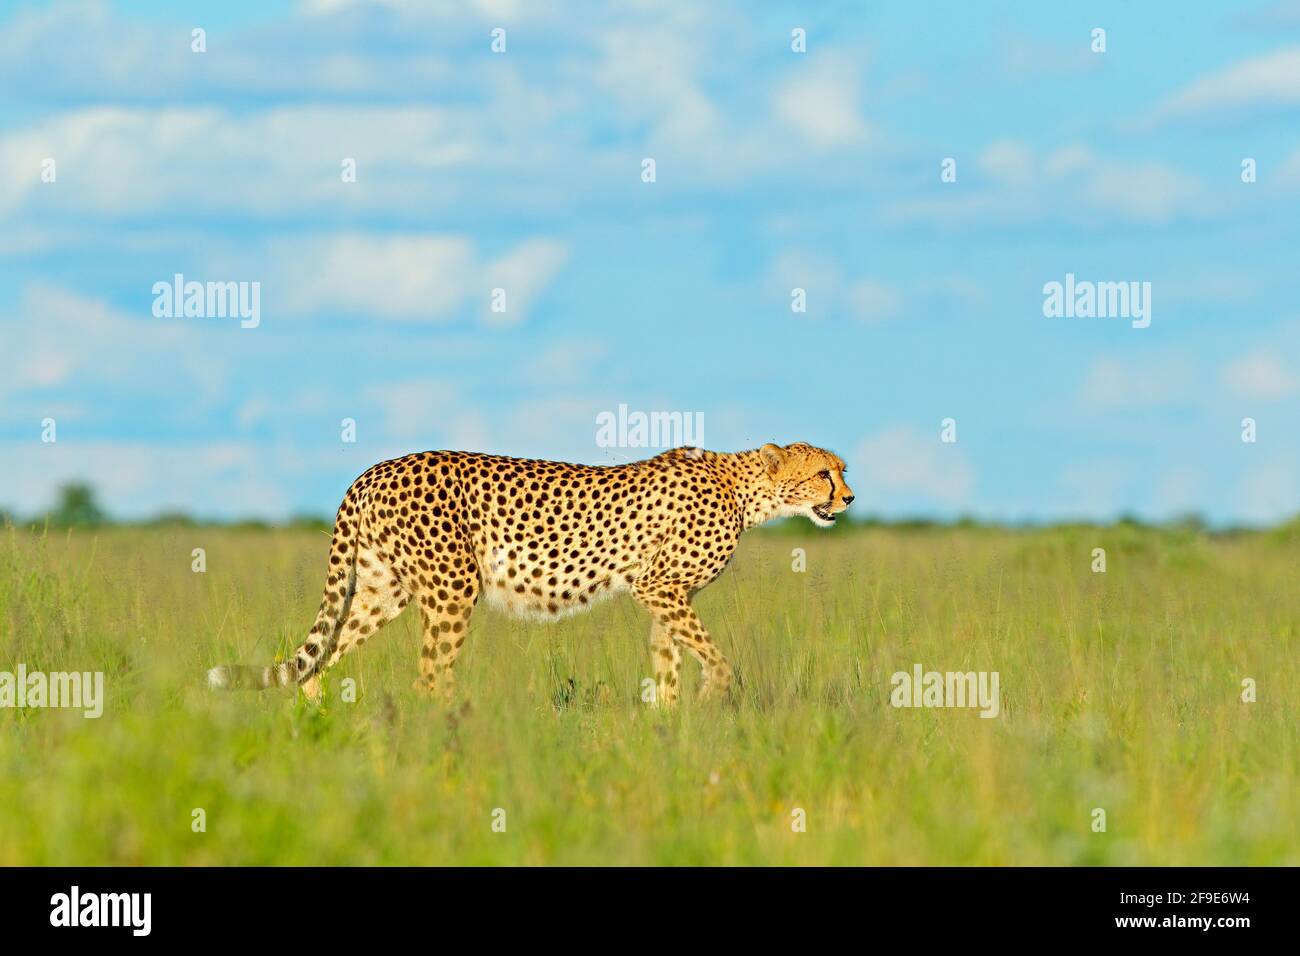 Gepard, Acinonyx jubatus, Wildkatze. Schnellstes Säugetier an Land, Botswana, Afrika. Gepard im Gras, blauer Himmel mit Wolken. Gefleckte Wildkatze Stockfoto